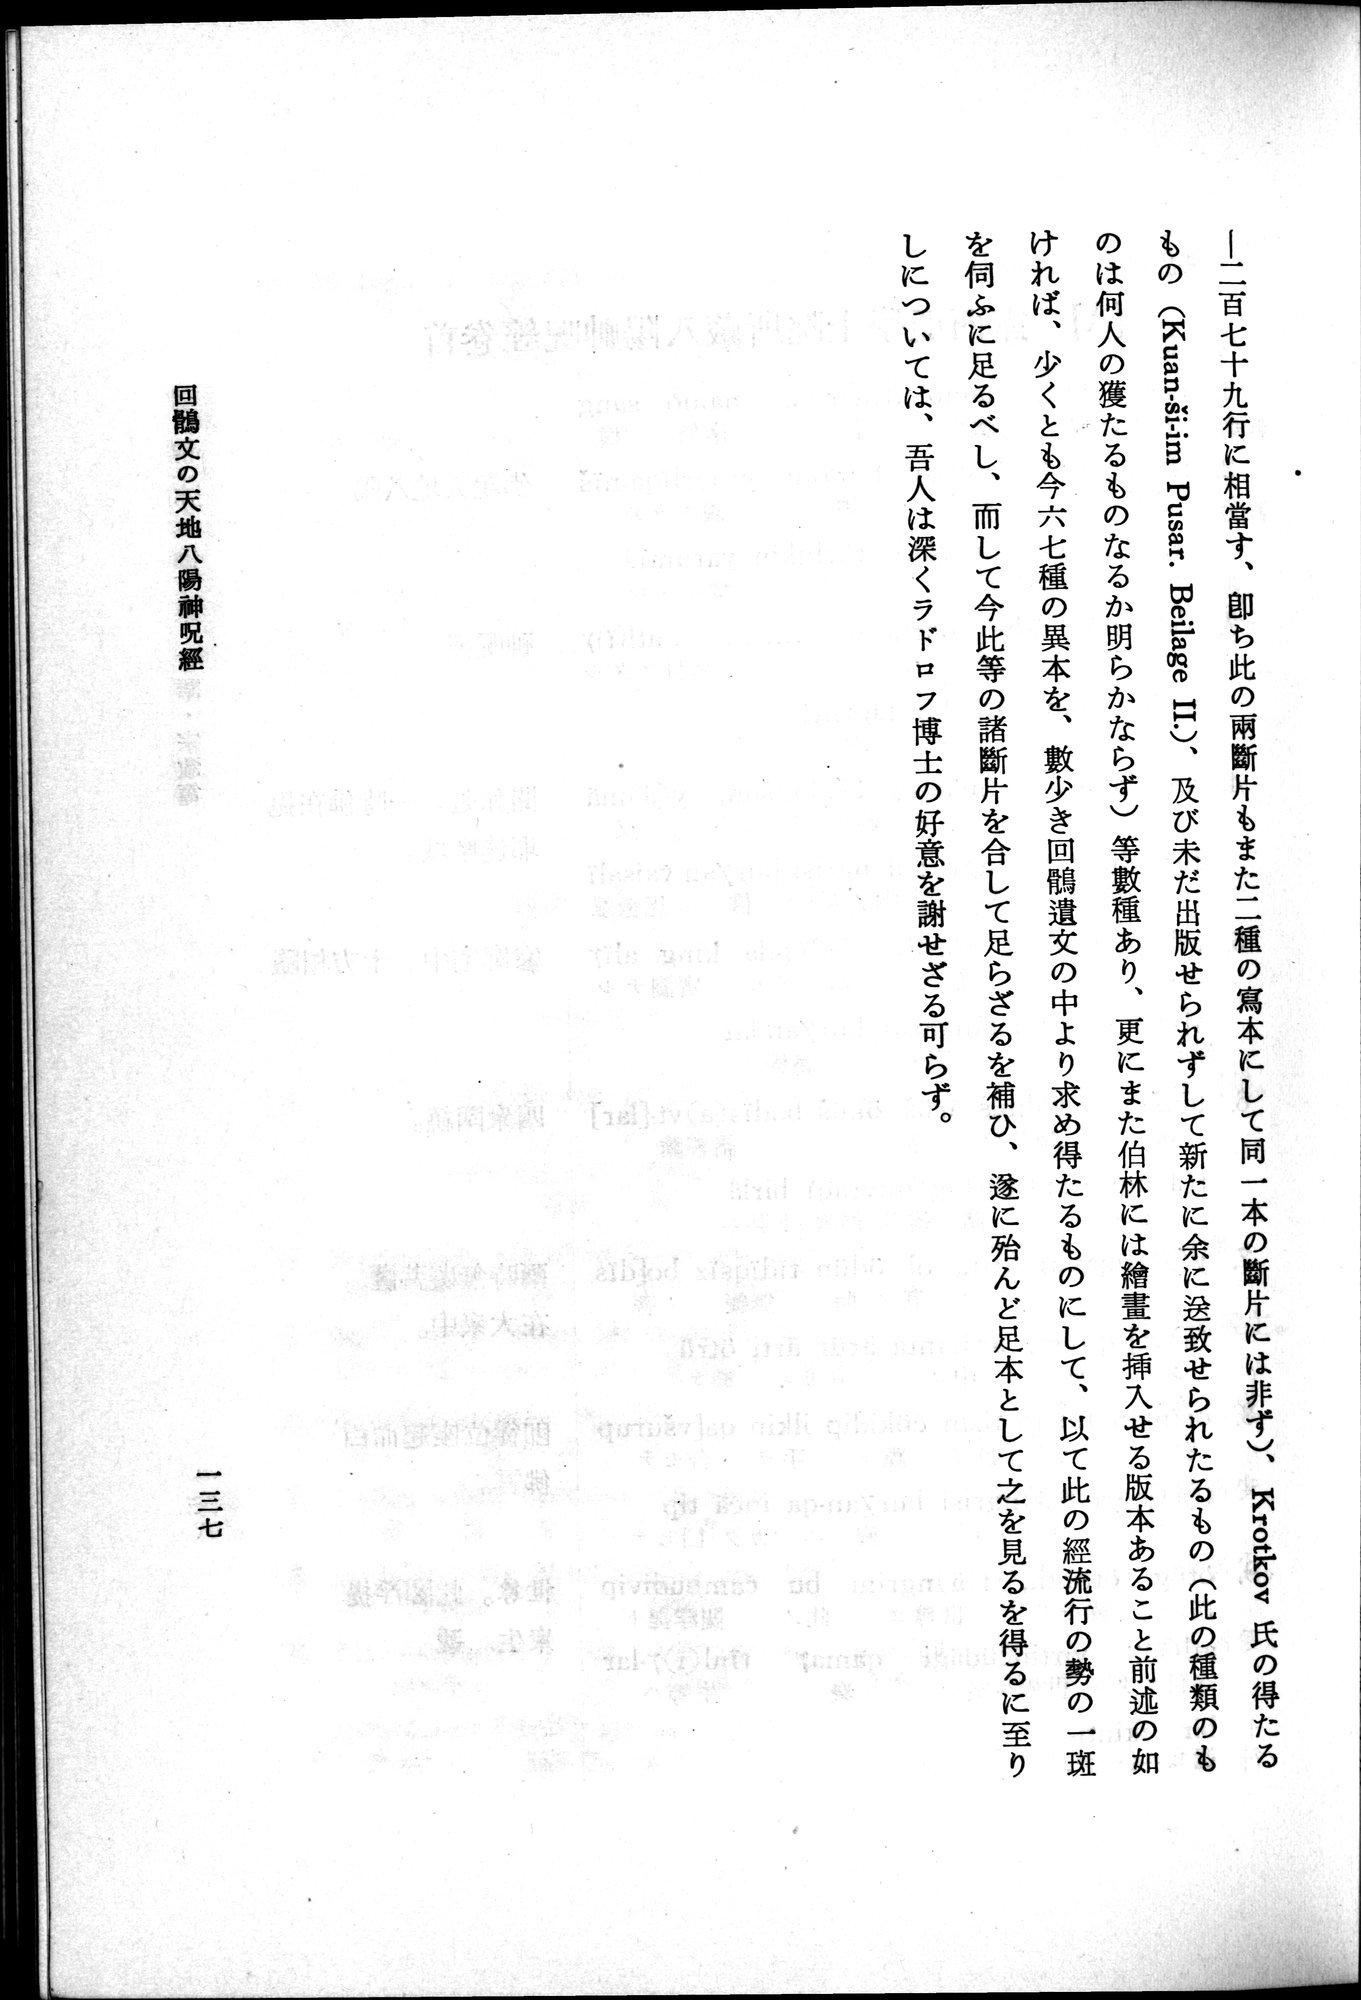 羽田博士史学論文集 : vol.2 / Page 199 (Grayscale High Resolution Image)